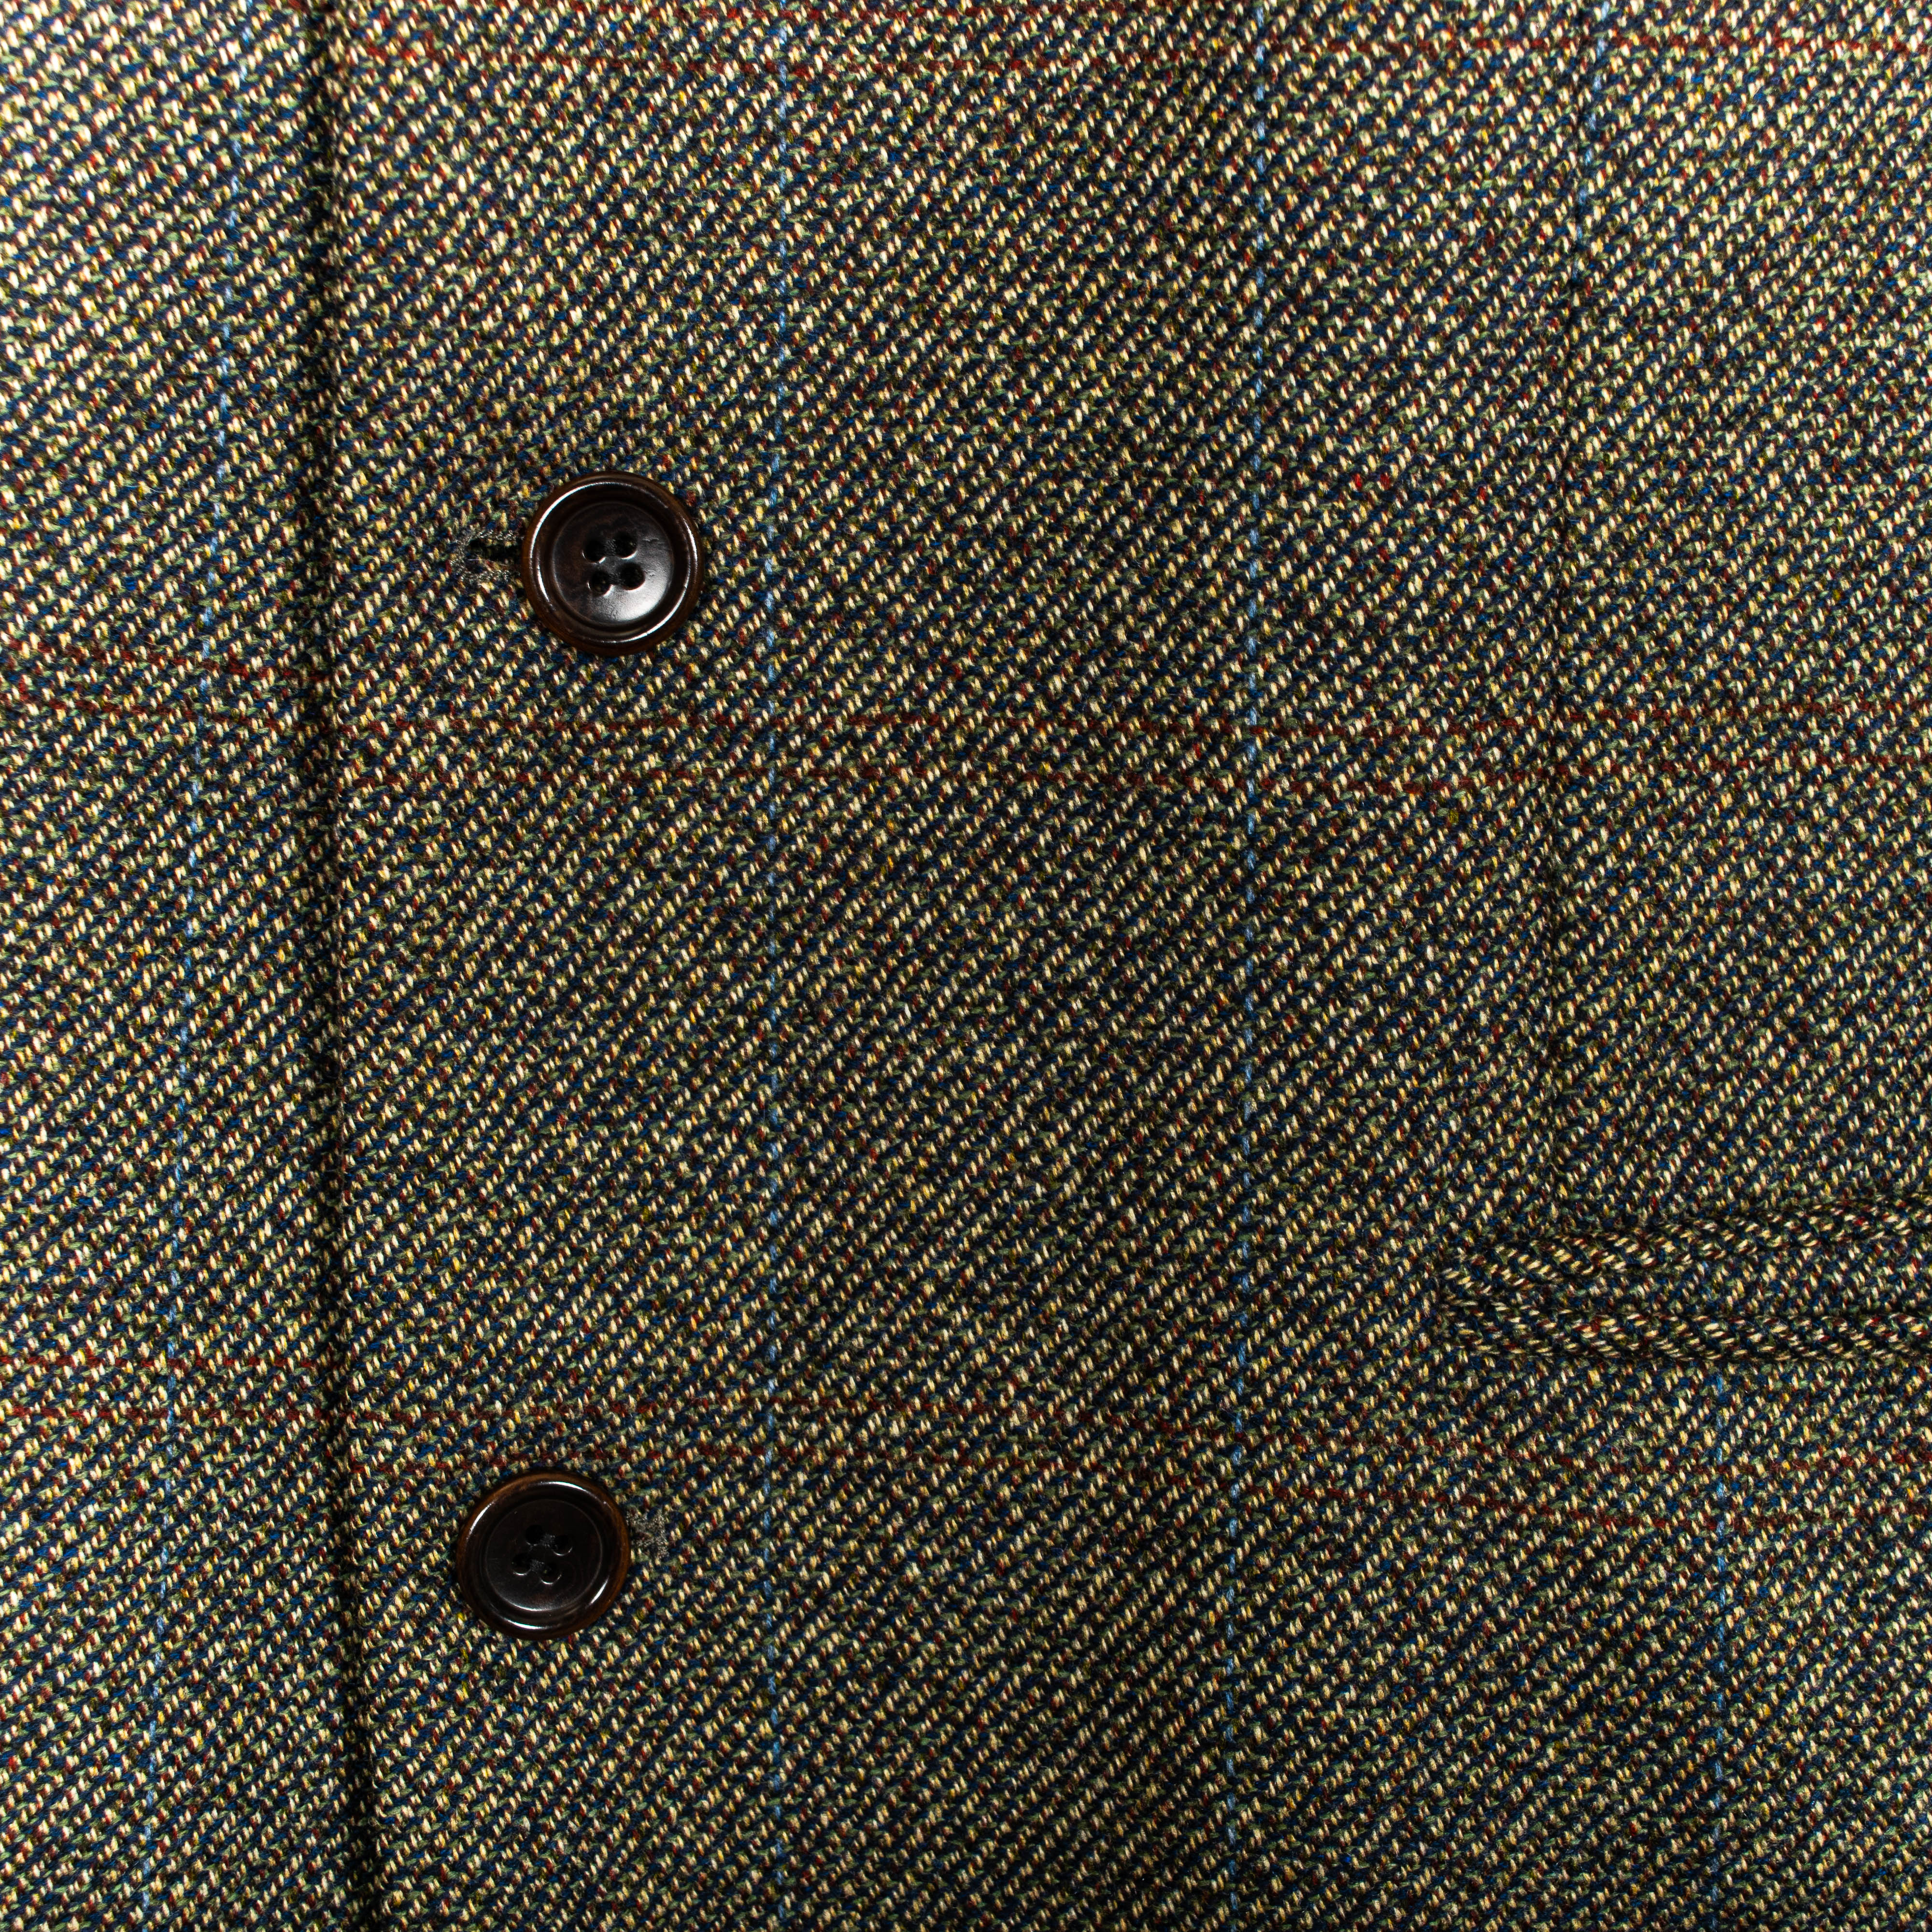 Hugo Boss Vintage Dark Brown Long Wool Blazer Men's L